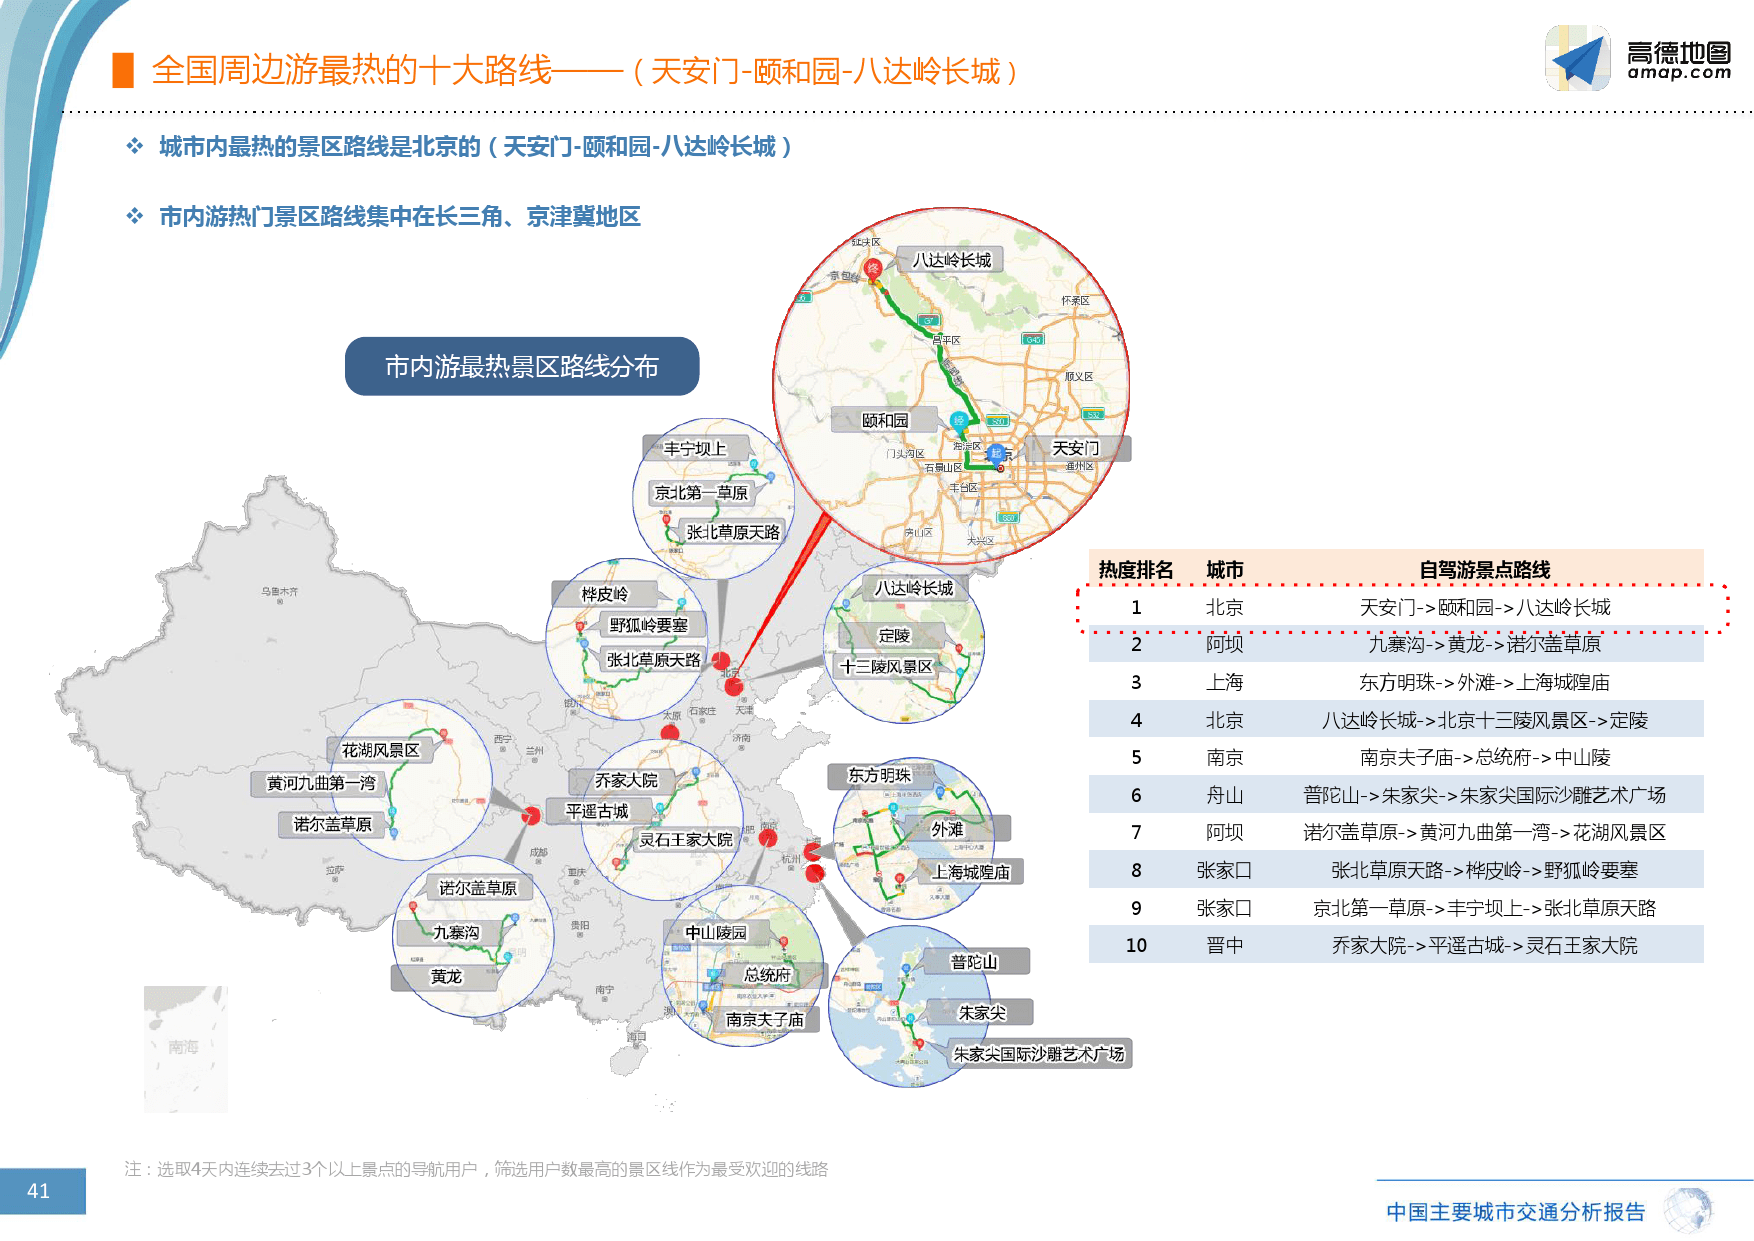 高德地图:2016年q3中国主要城市交通分析报告图片